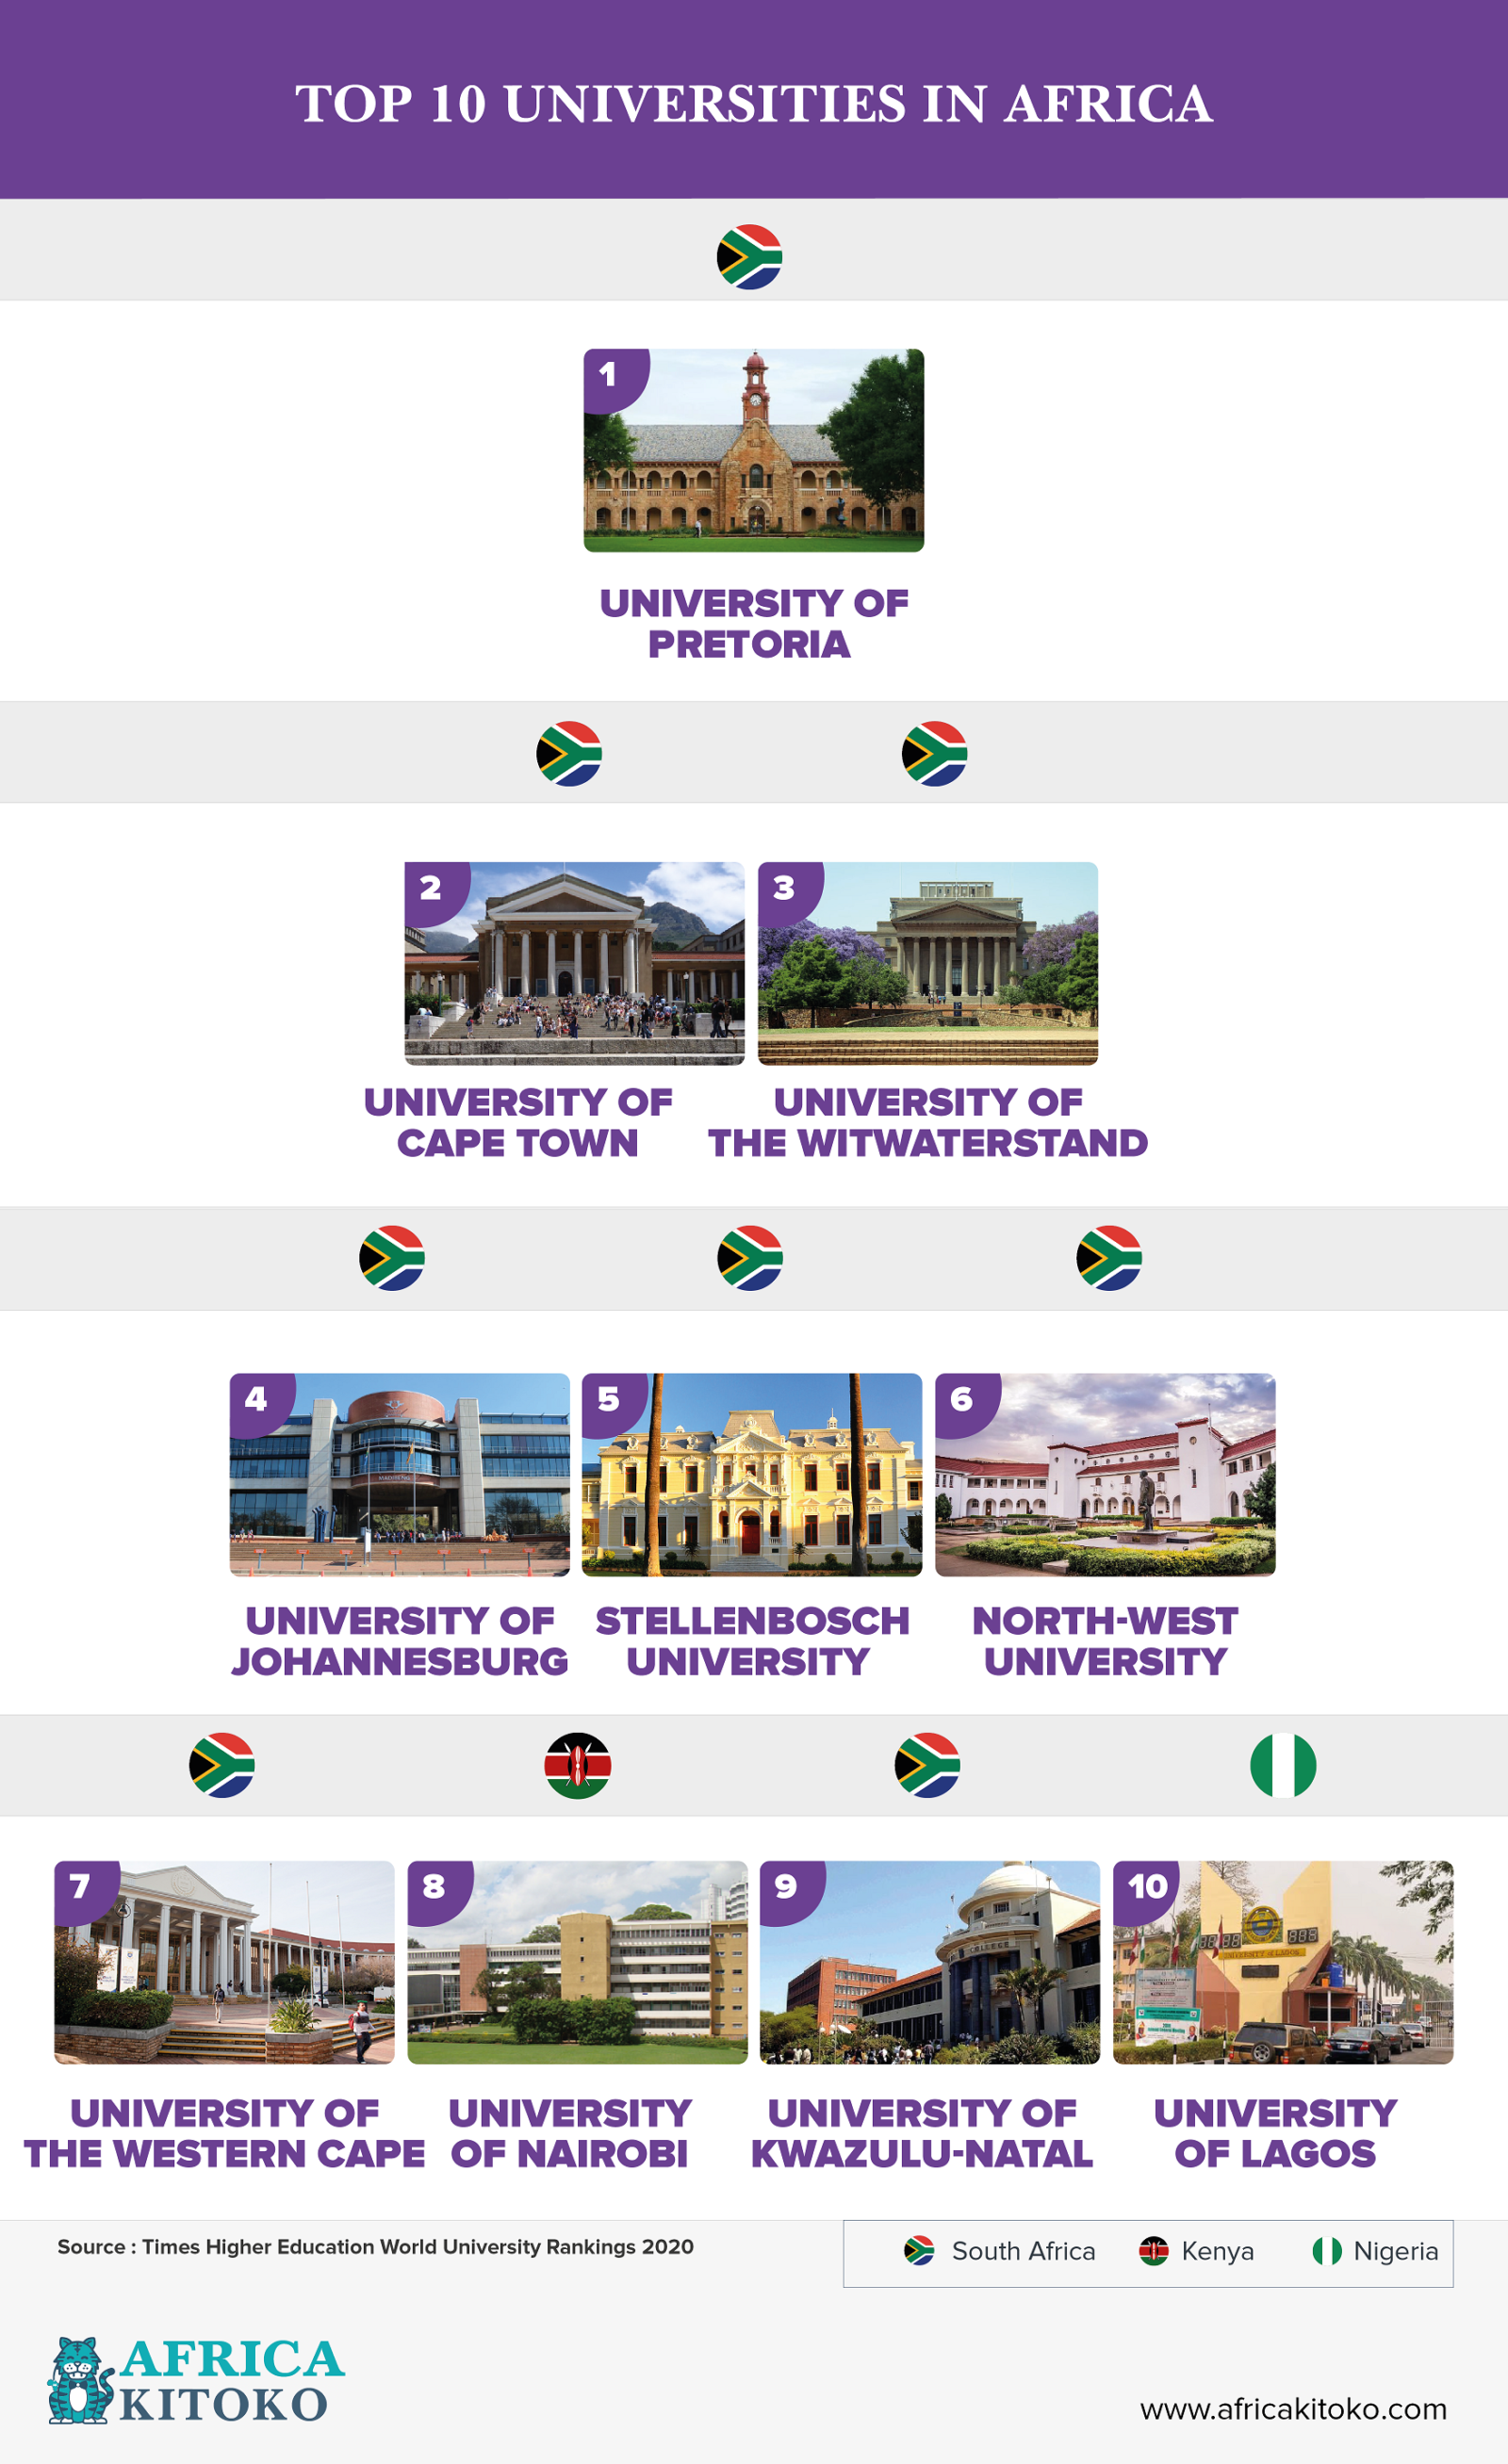 Top 10 universities in Africa – AFRICA KITOKO